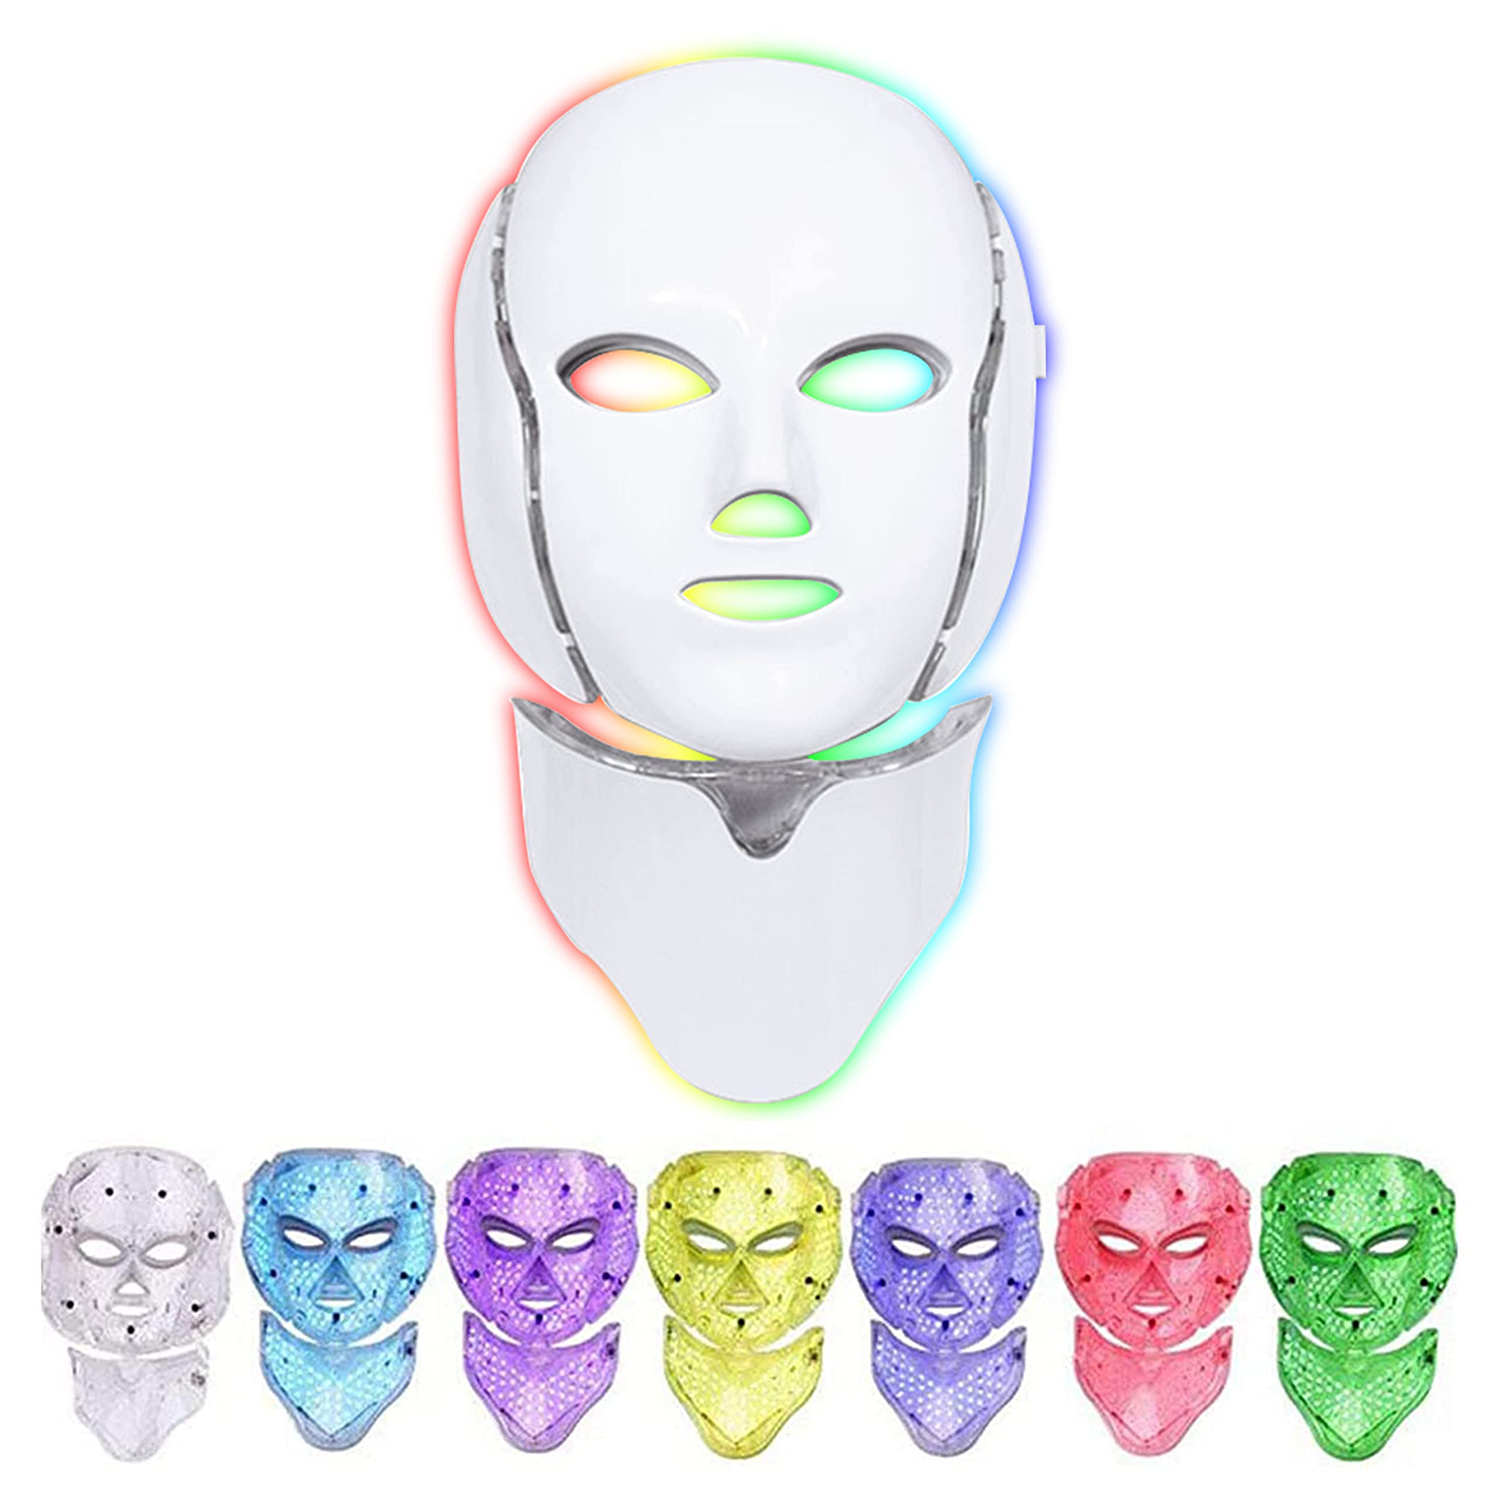 Masque facial LED 7 couleurs